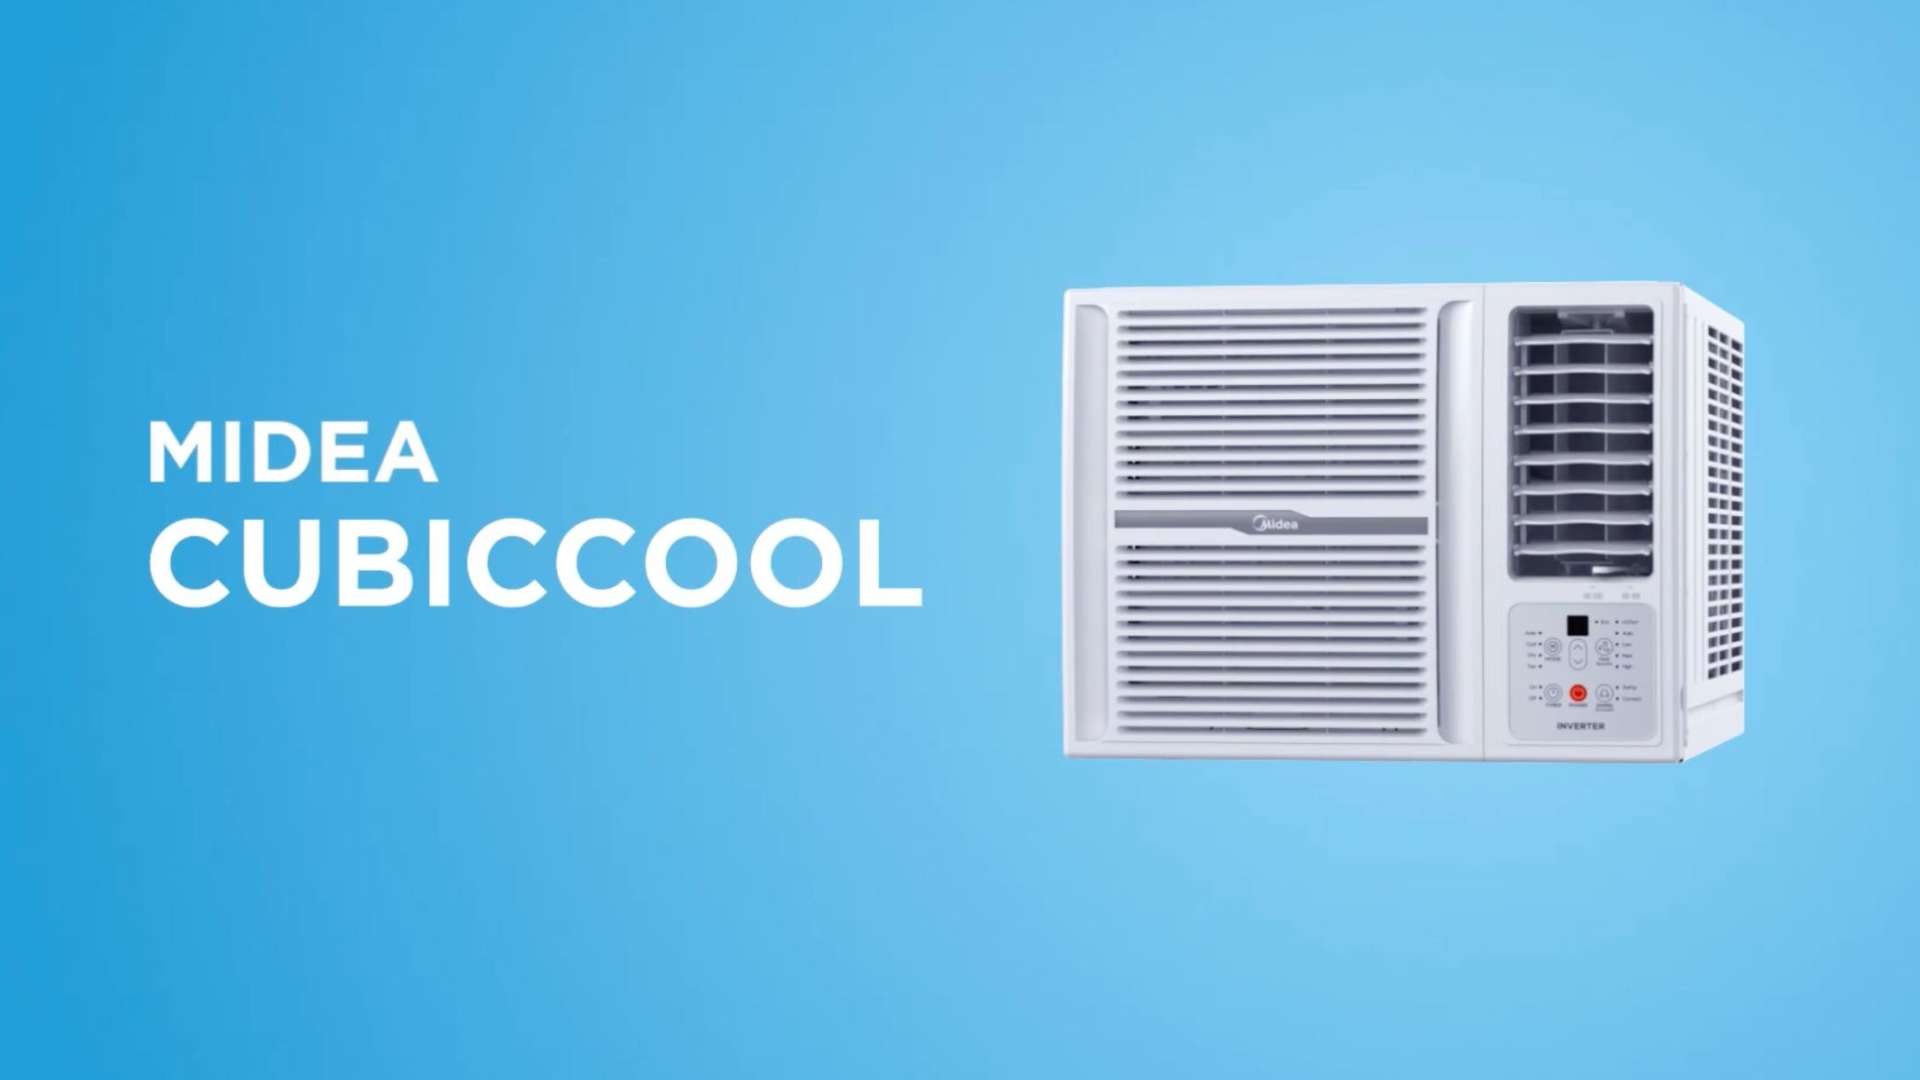 Midea 美的CubicCool窗机空调产品宣传片